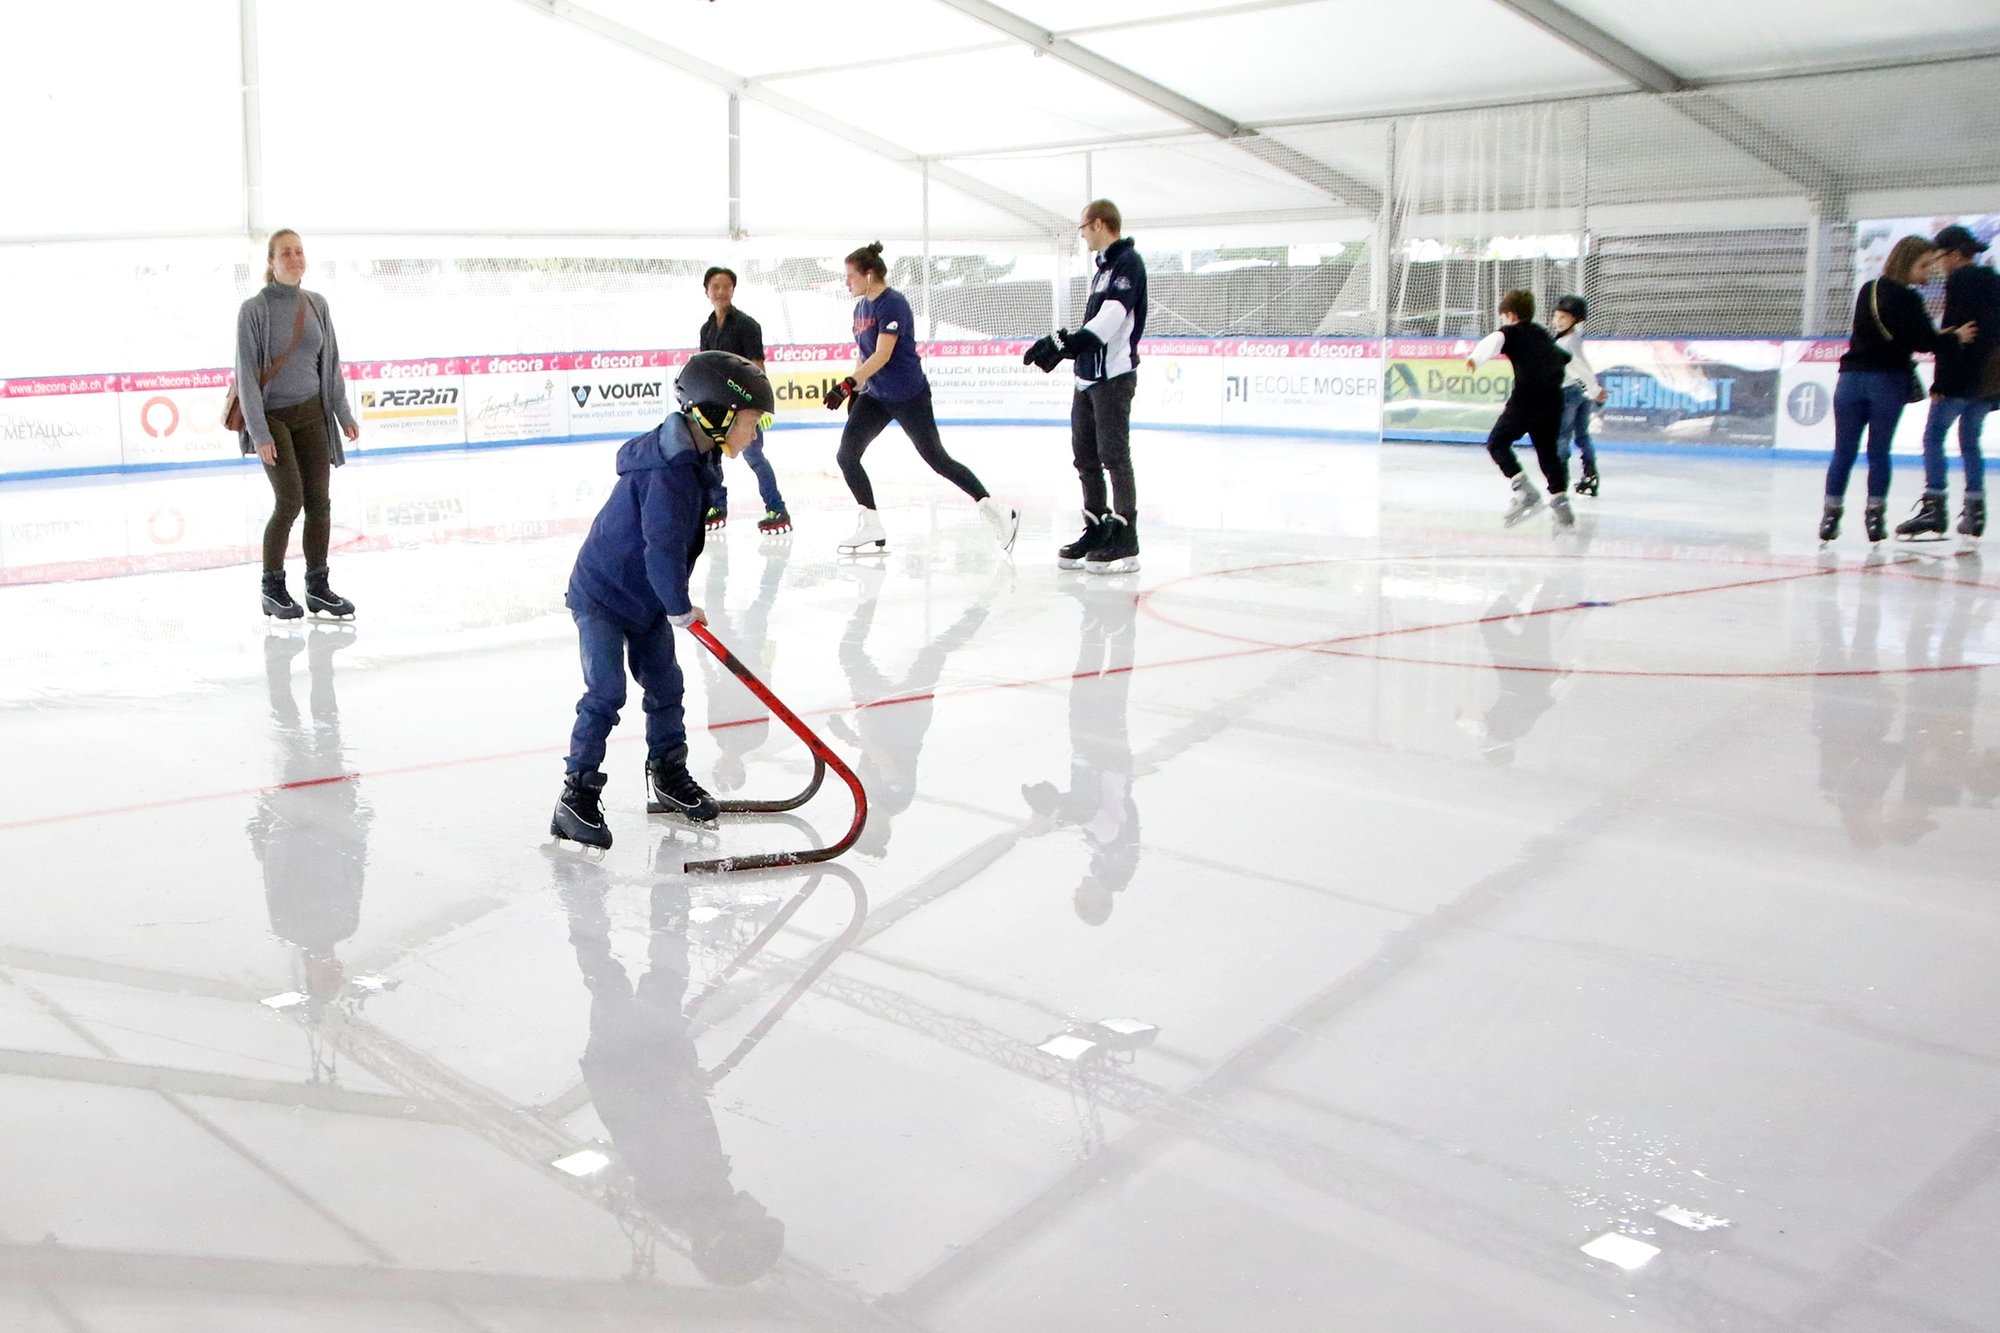 Les patinoires saisonnières, ainsi que les Eaux-minérales, à Morges, rouvrent pour un public limité dès ce week-end.